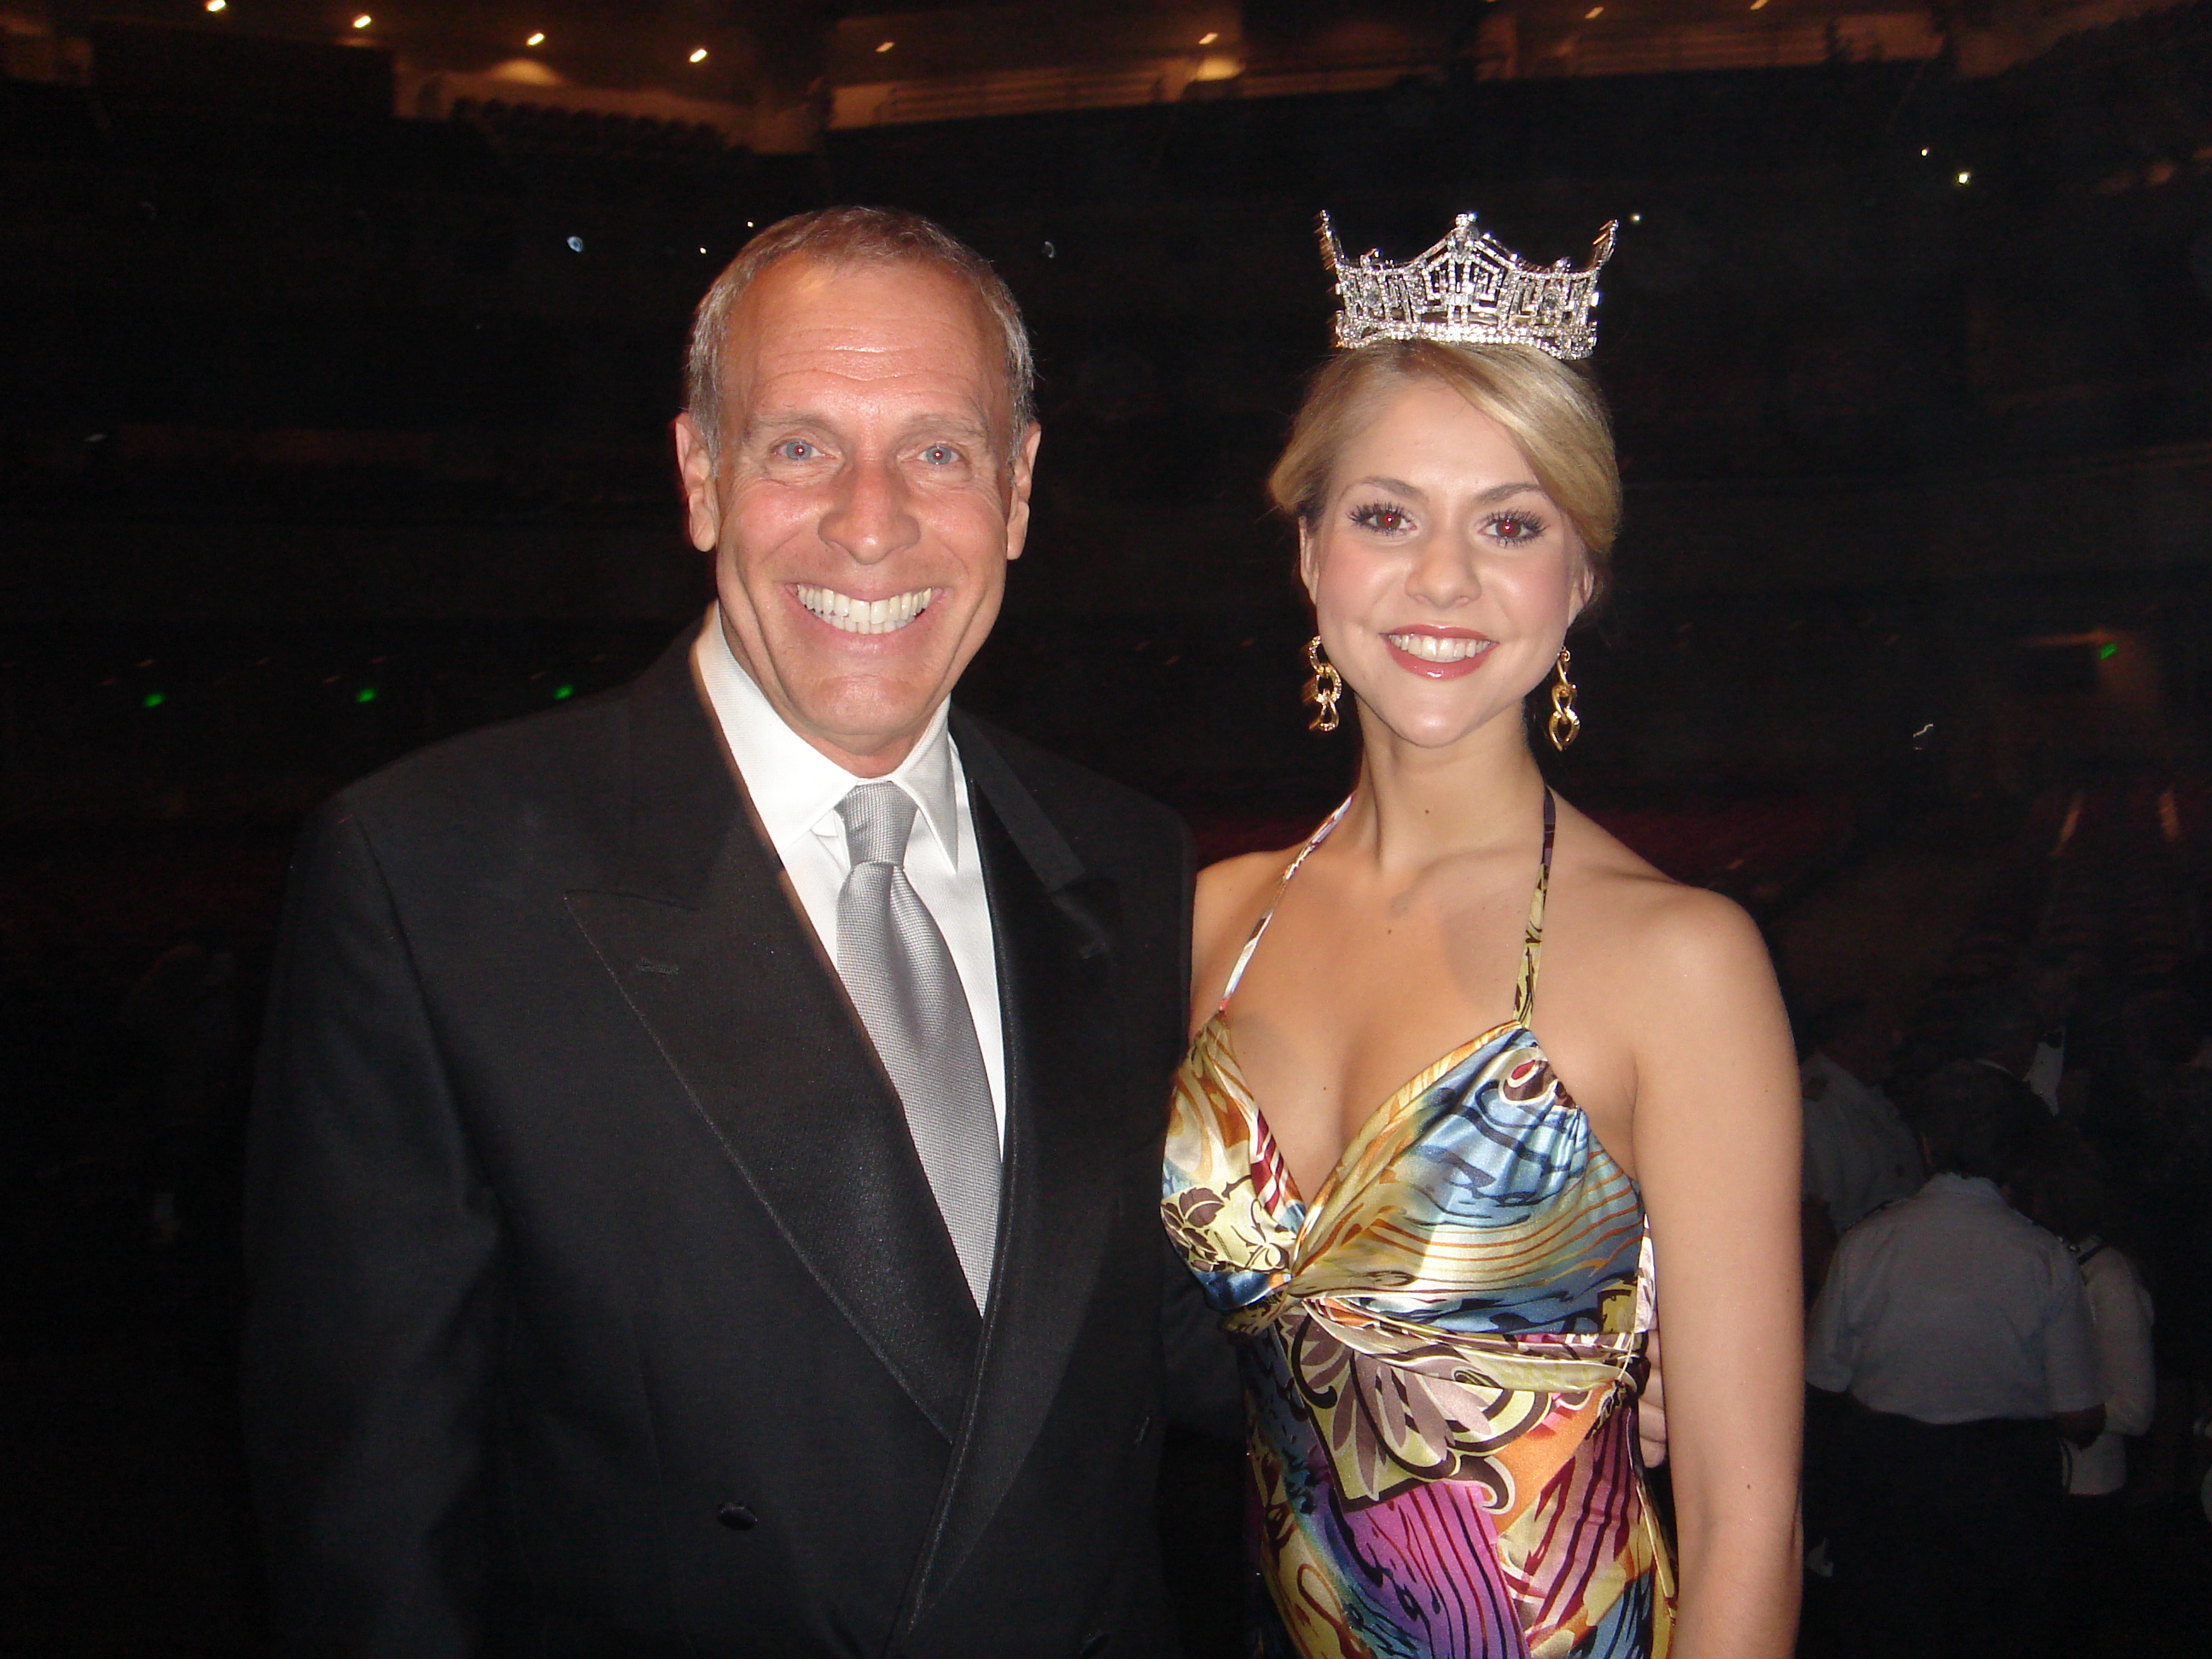 Robert Rue and Kirsten Haglund, Miss America 2008